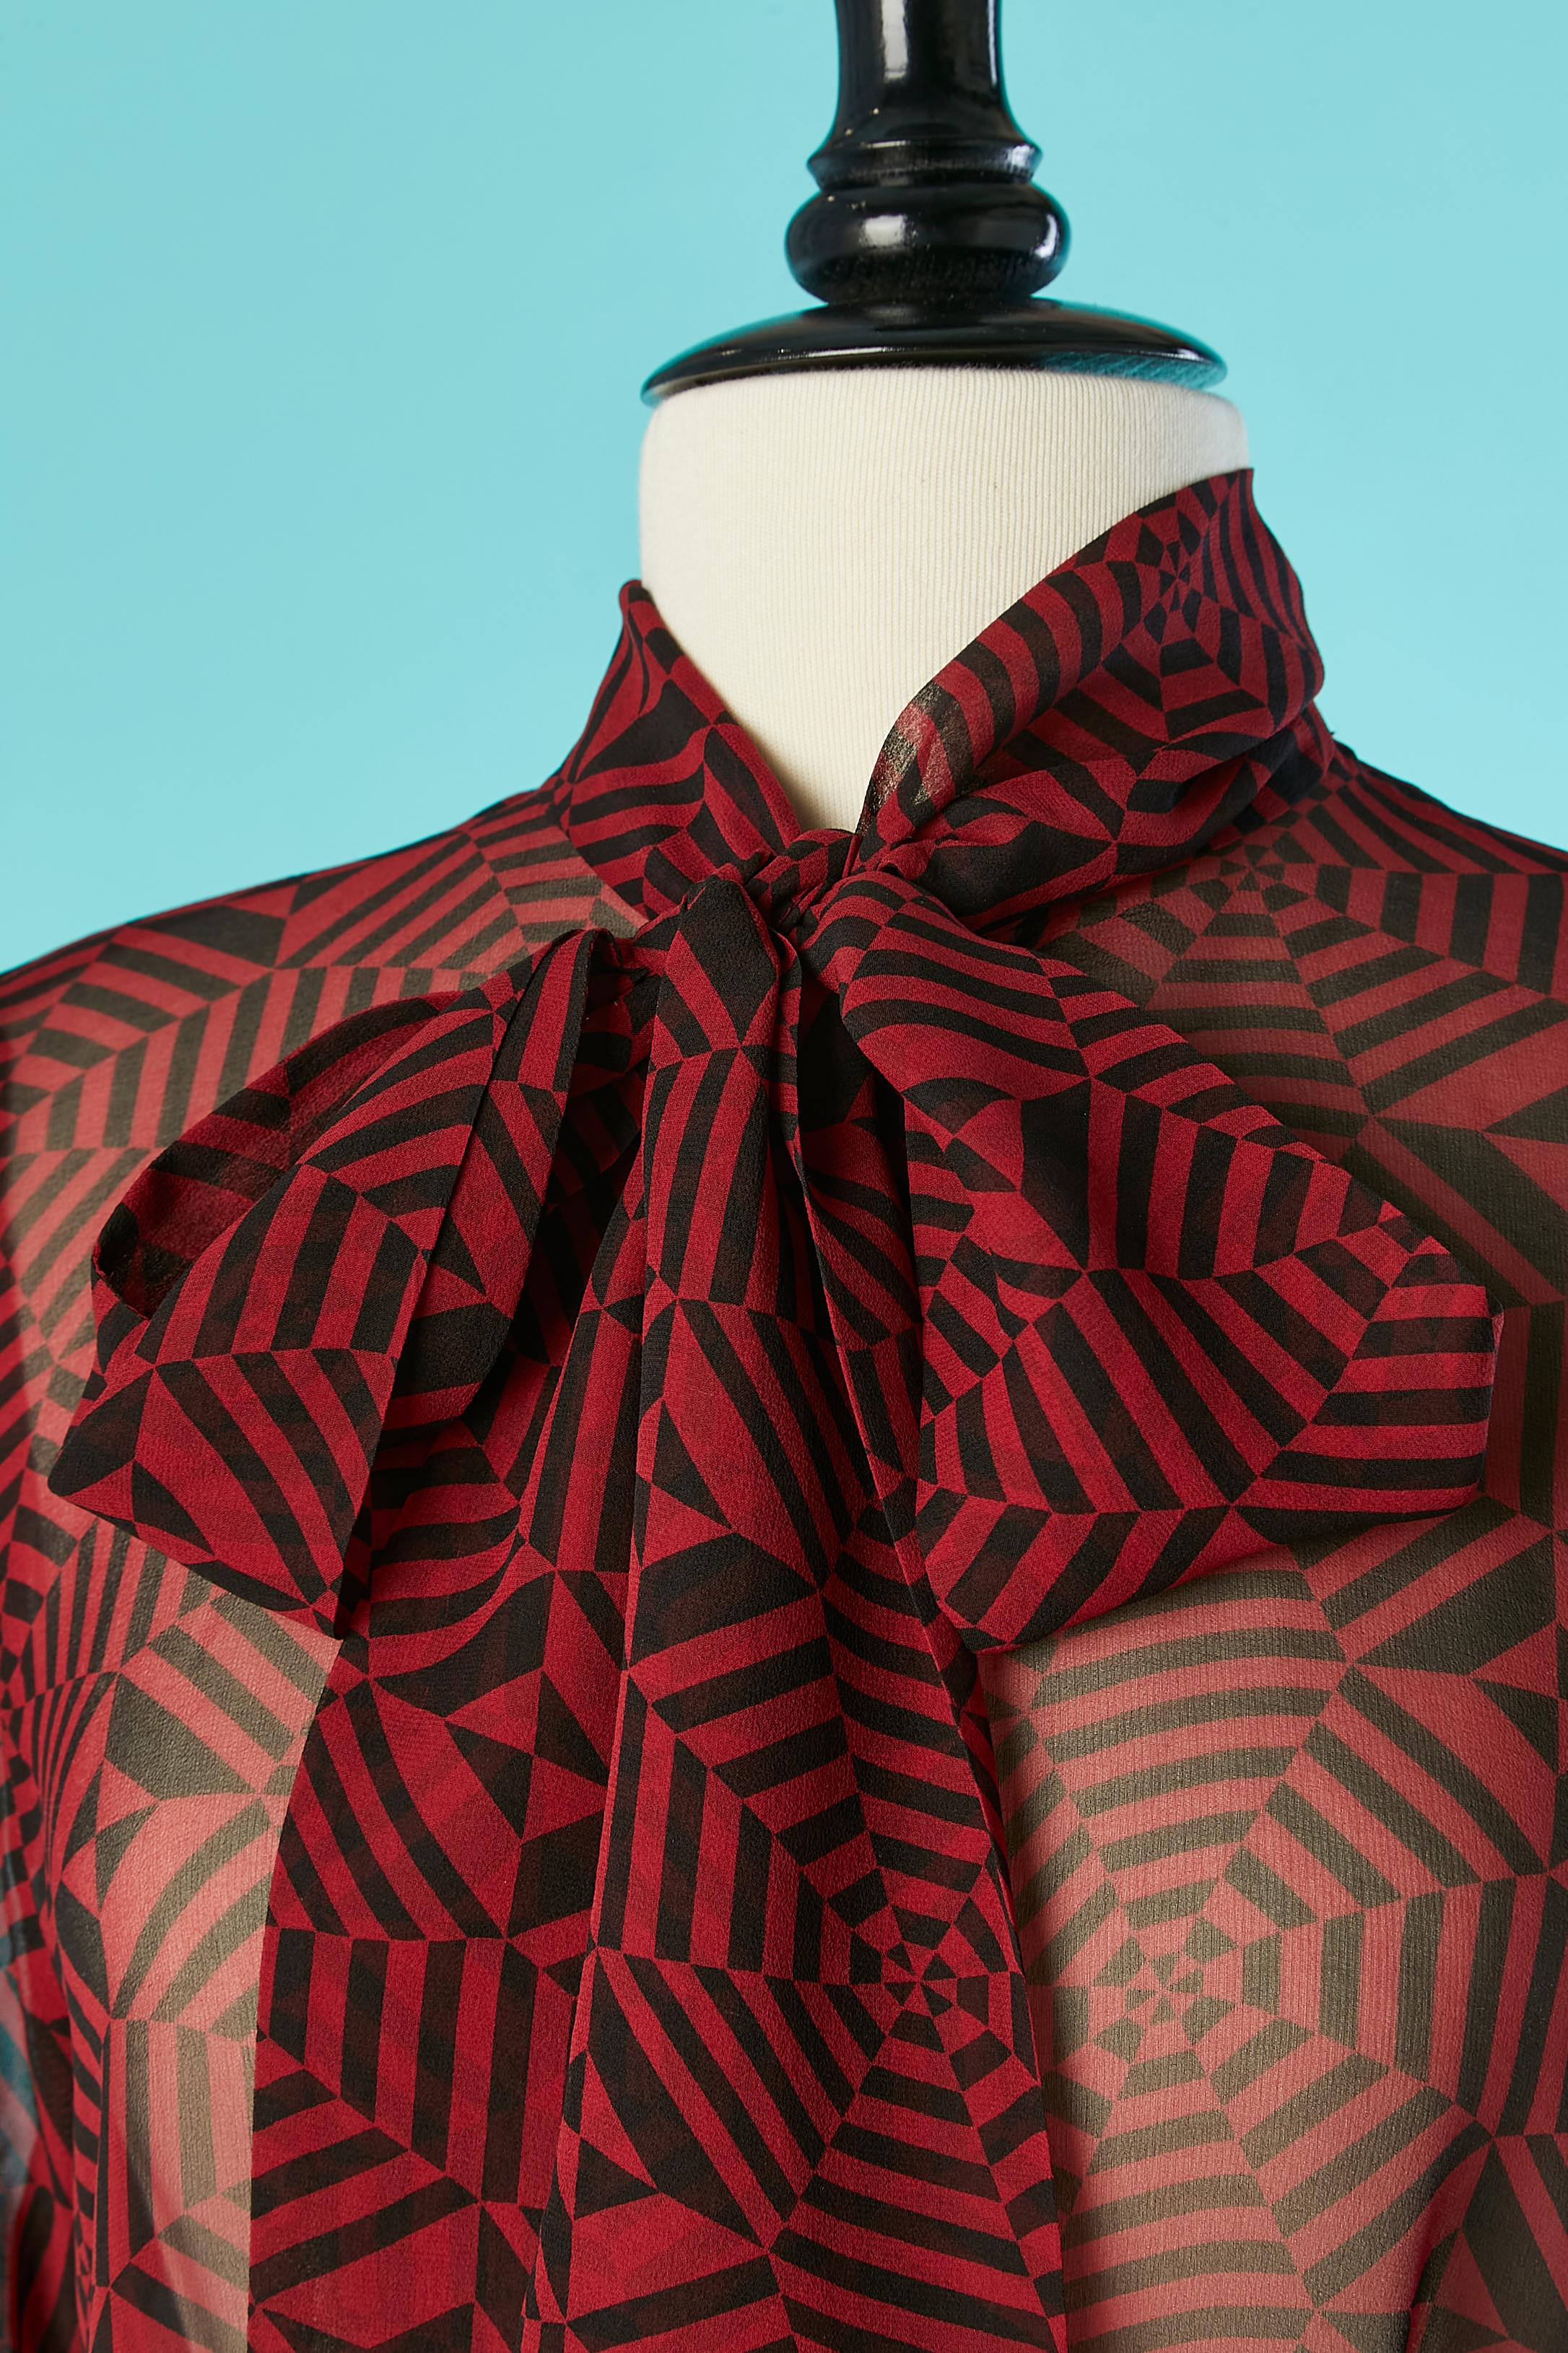 Imprimé graphique noir et rouge sur un ensemble en mousseline de soie. Col écharpe. Composition du tissu : mousseline de soie (pas d'indication concernant la doublure à l'intérieur de la jupe, pas de doublure à l'intérieur de la chemise) 
Taille de